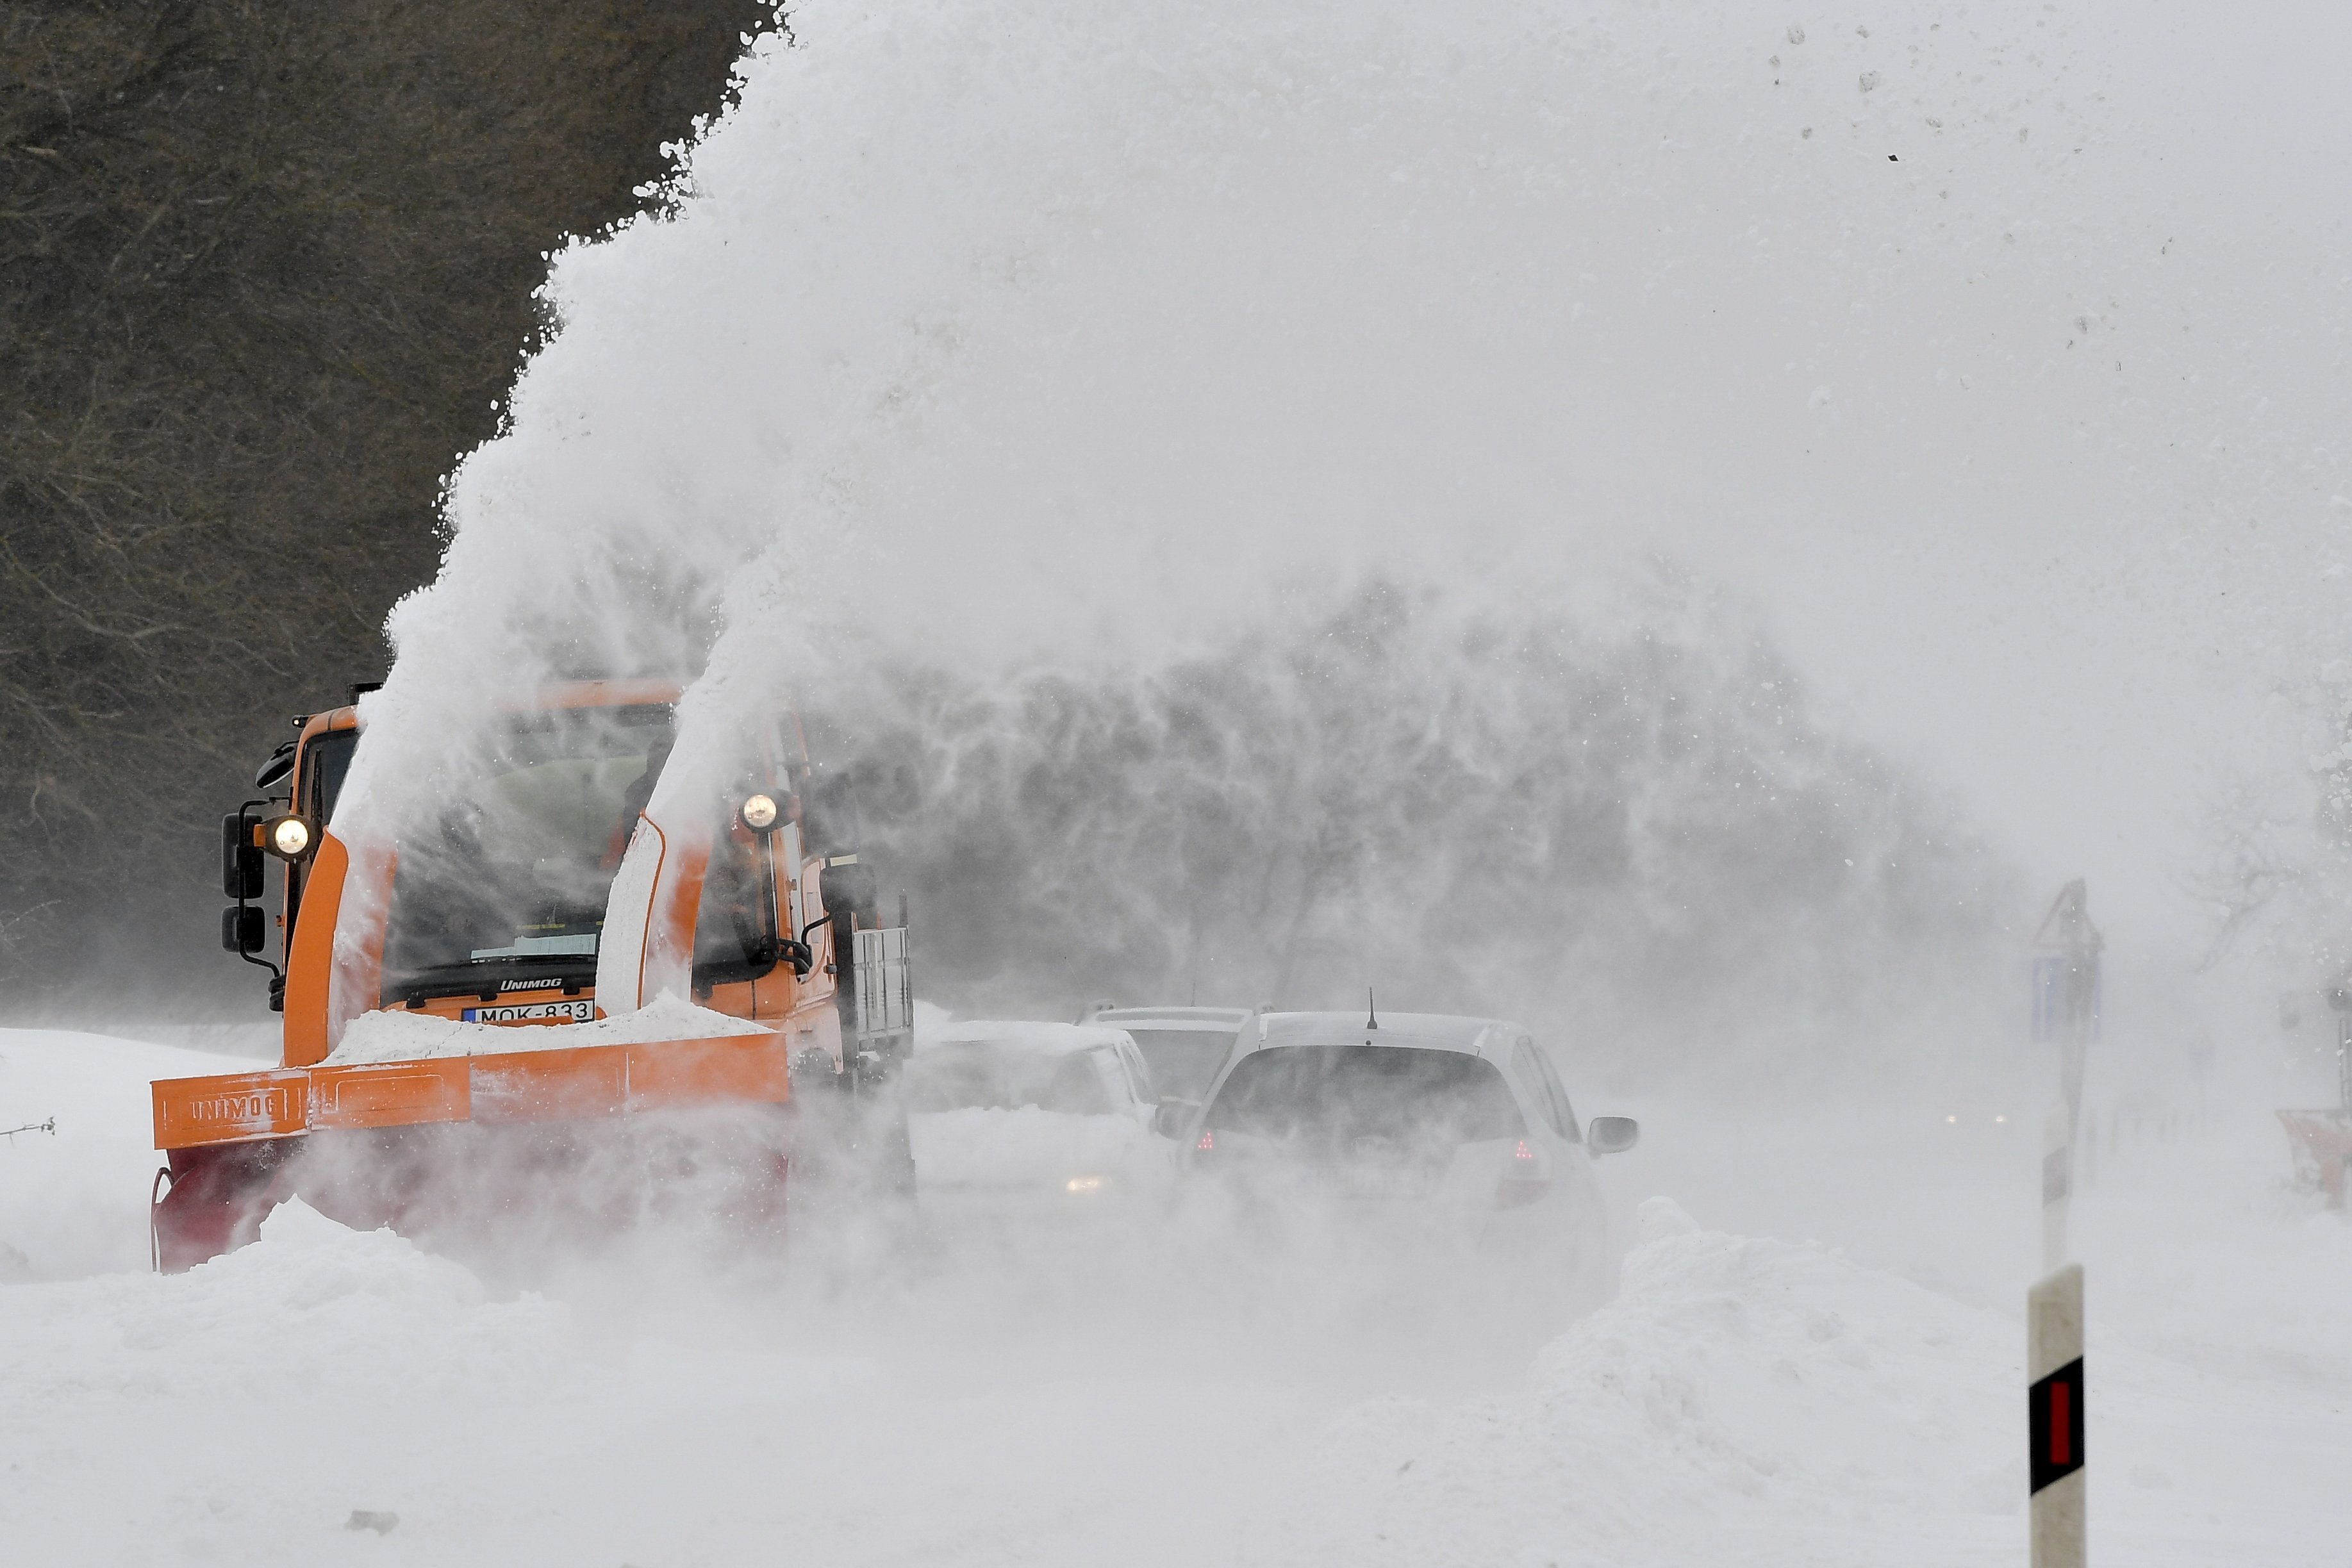 Hóvihar: akadozik a vasúti közlekedés, a hófúvások miatt az M3-as is nehezen járható csak